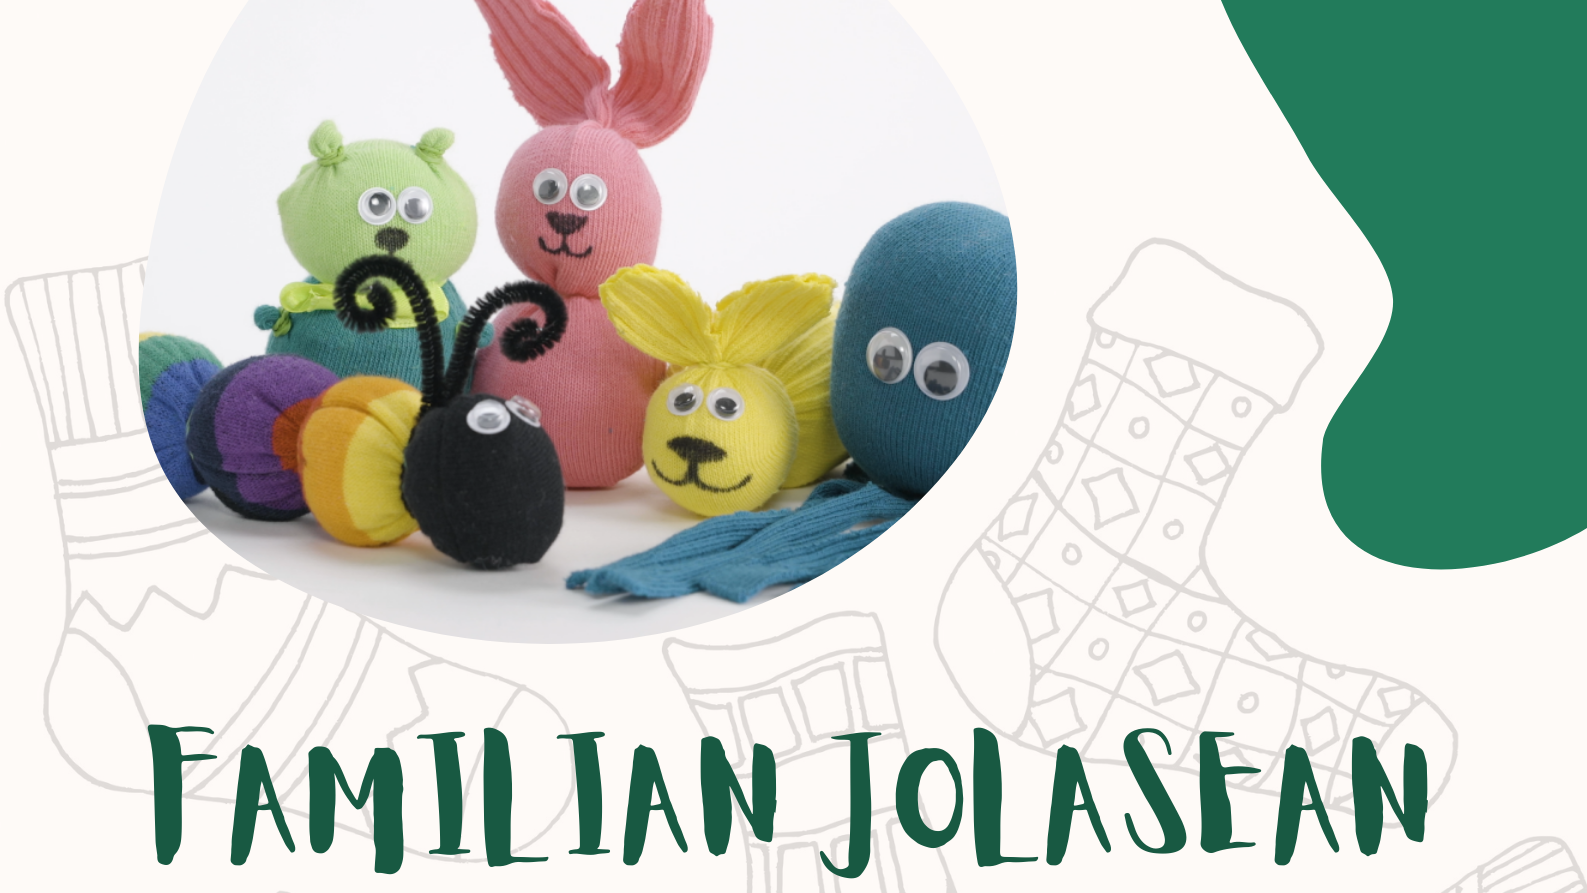 Este sábado habrá un taller de peluches de calcetines dentro del programa Familian Jolasean